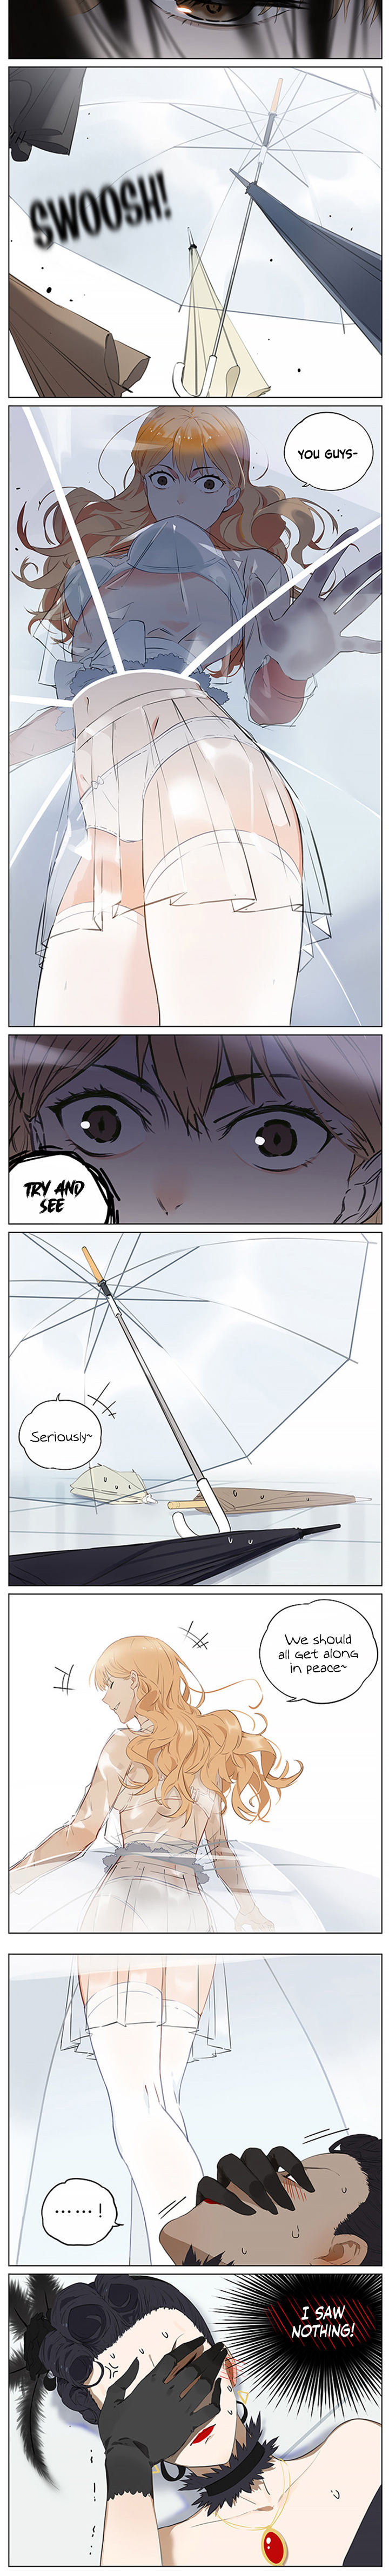 Umbrellas - Page 2